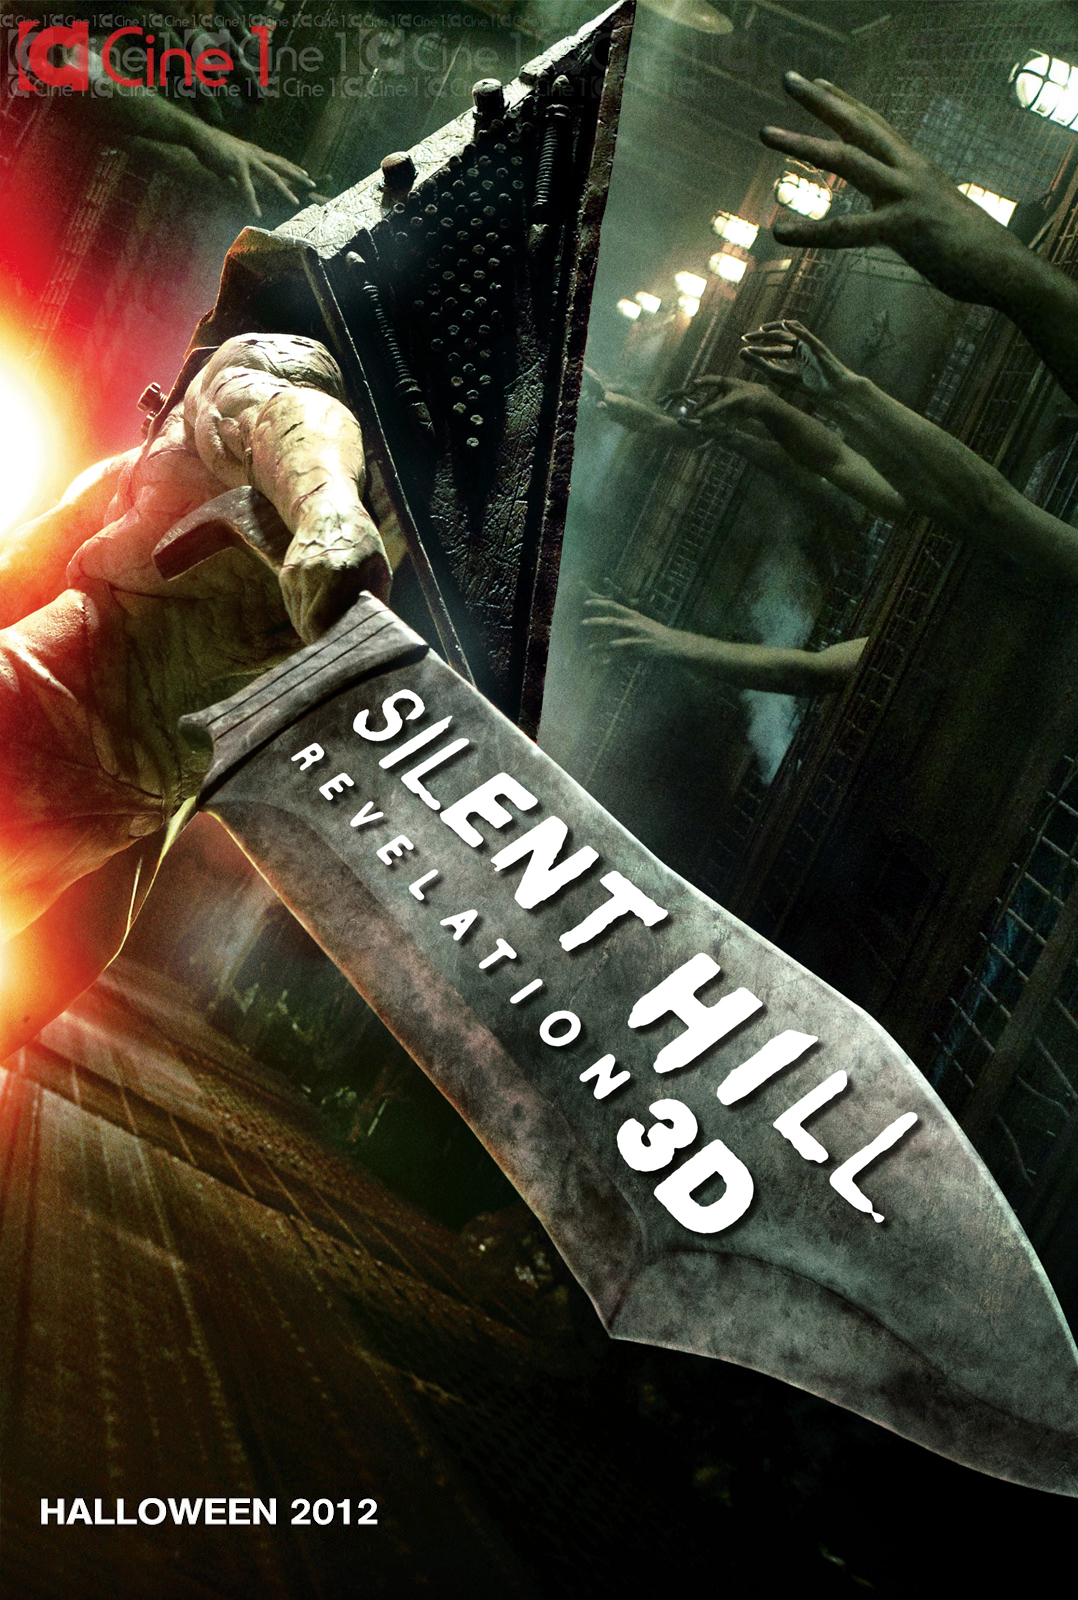 Silent Hill 2: Revelation 3D